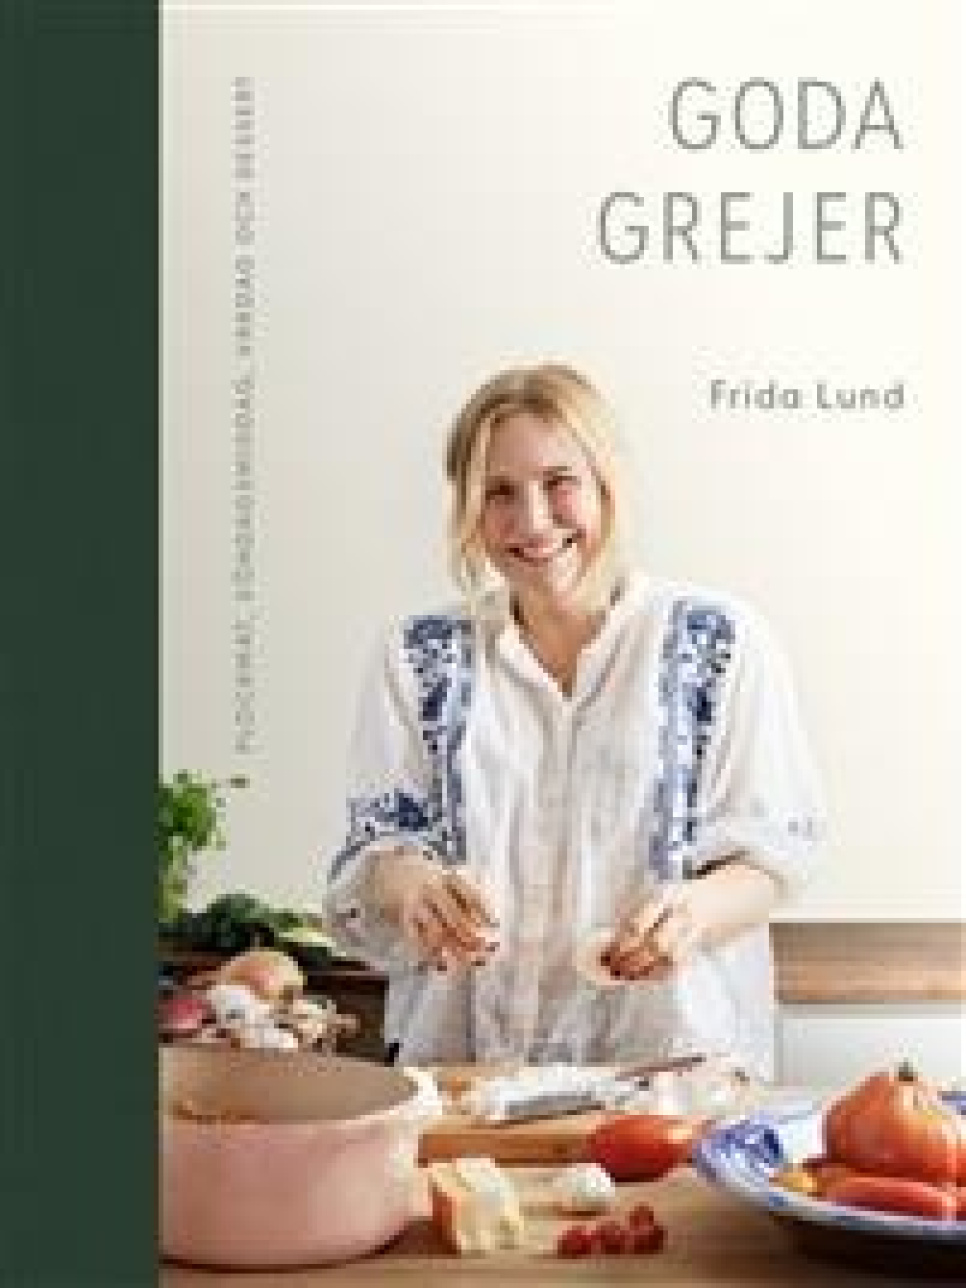 Goda grejer - Frida Lund in der Gruppe Kochen / Kochbücher / Prominente Köche & TV-Sendungen bei The Kitchen Lab (1355-23507)